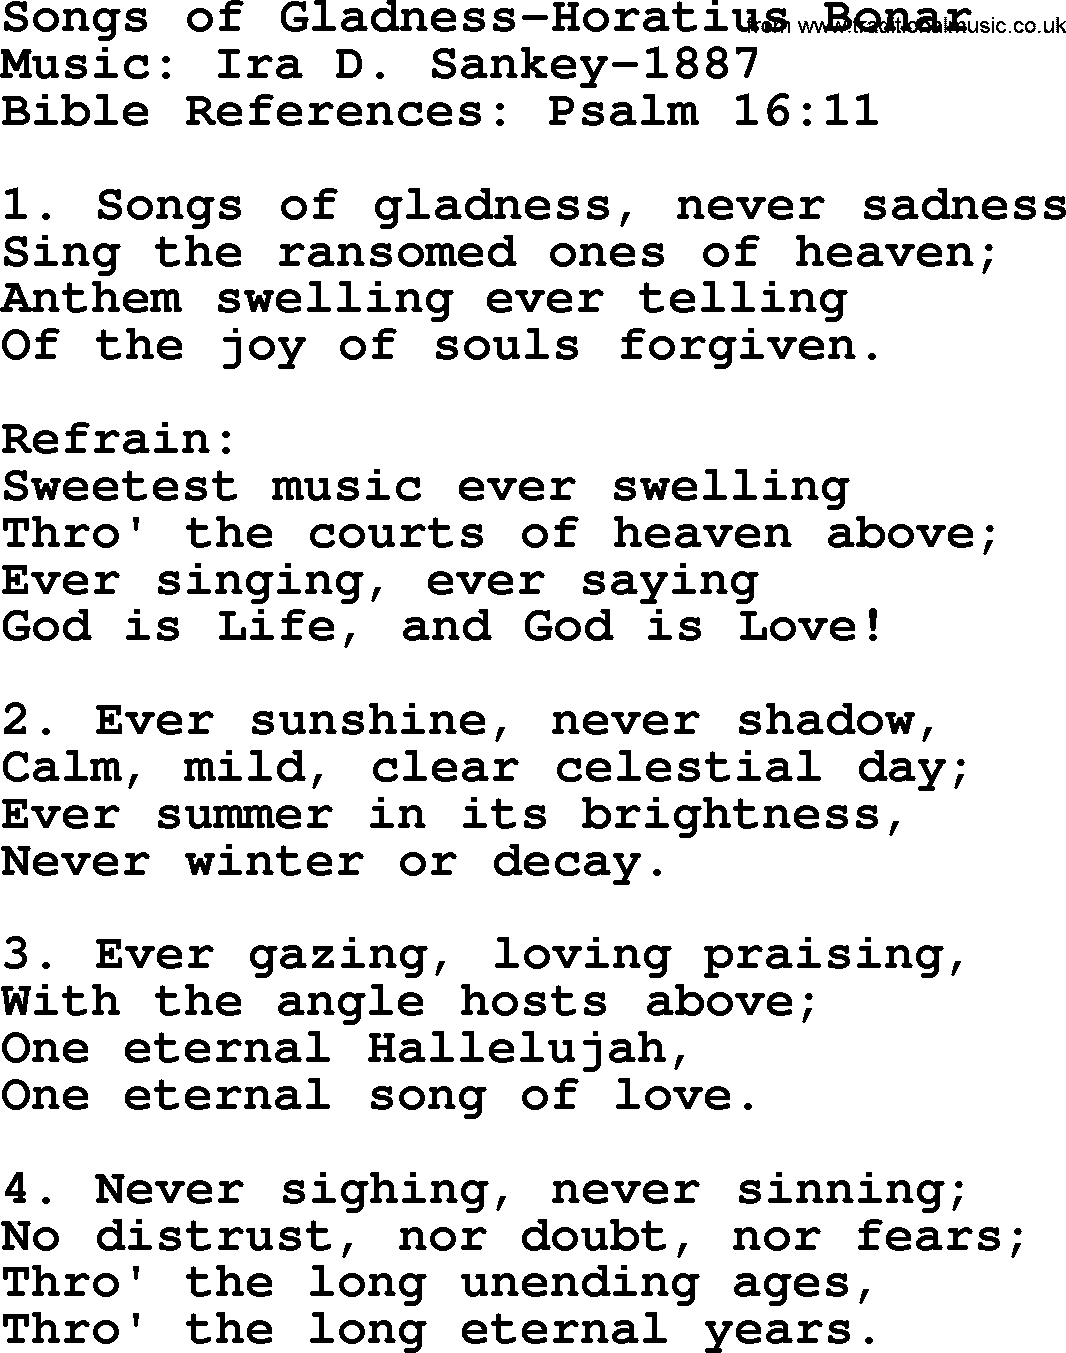 Ira Sankey hymn: Songs of Gladness-Horatius Bonar-Ira Sankey, lyrics